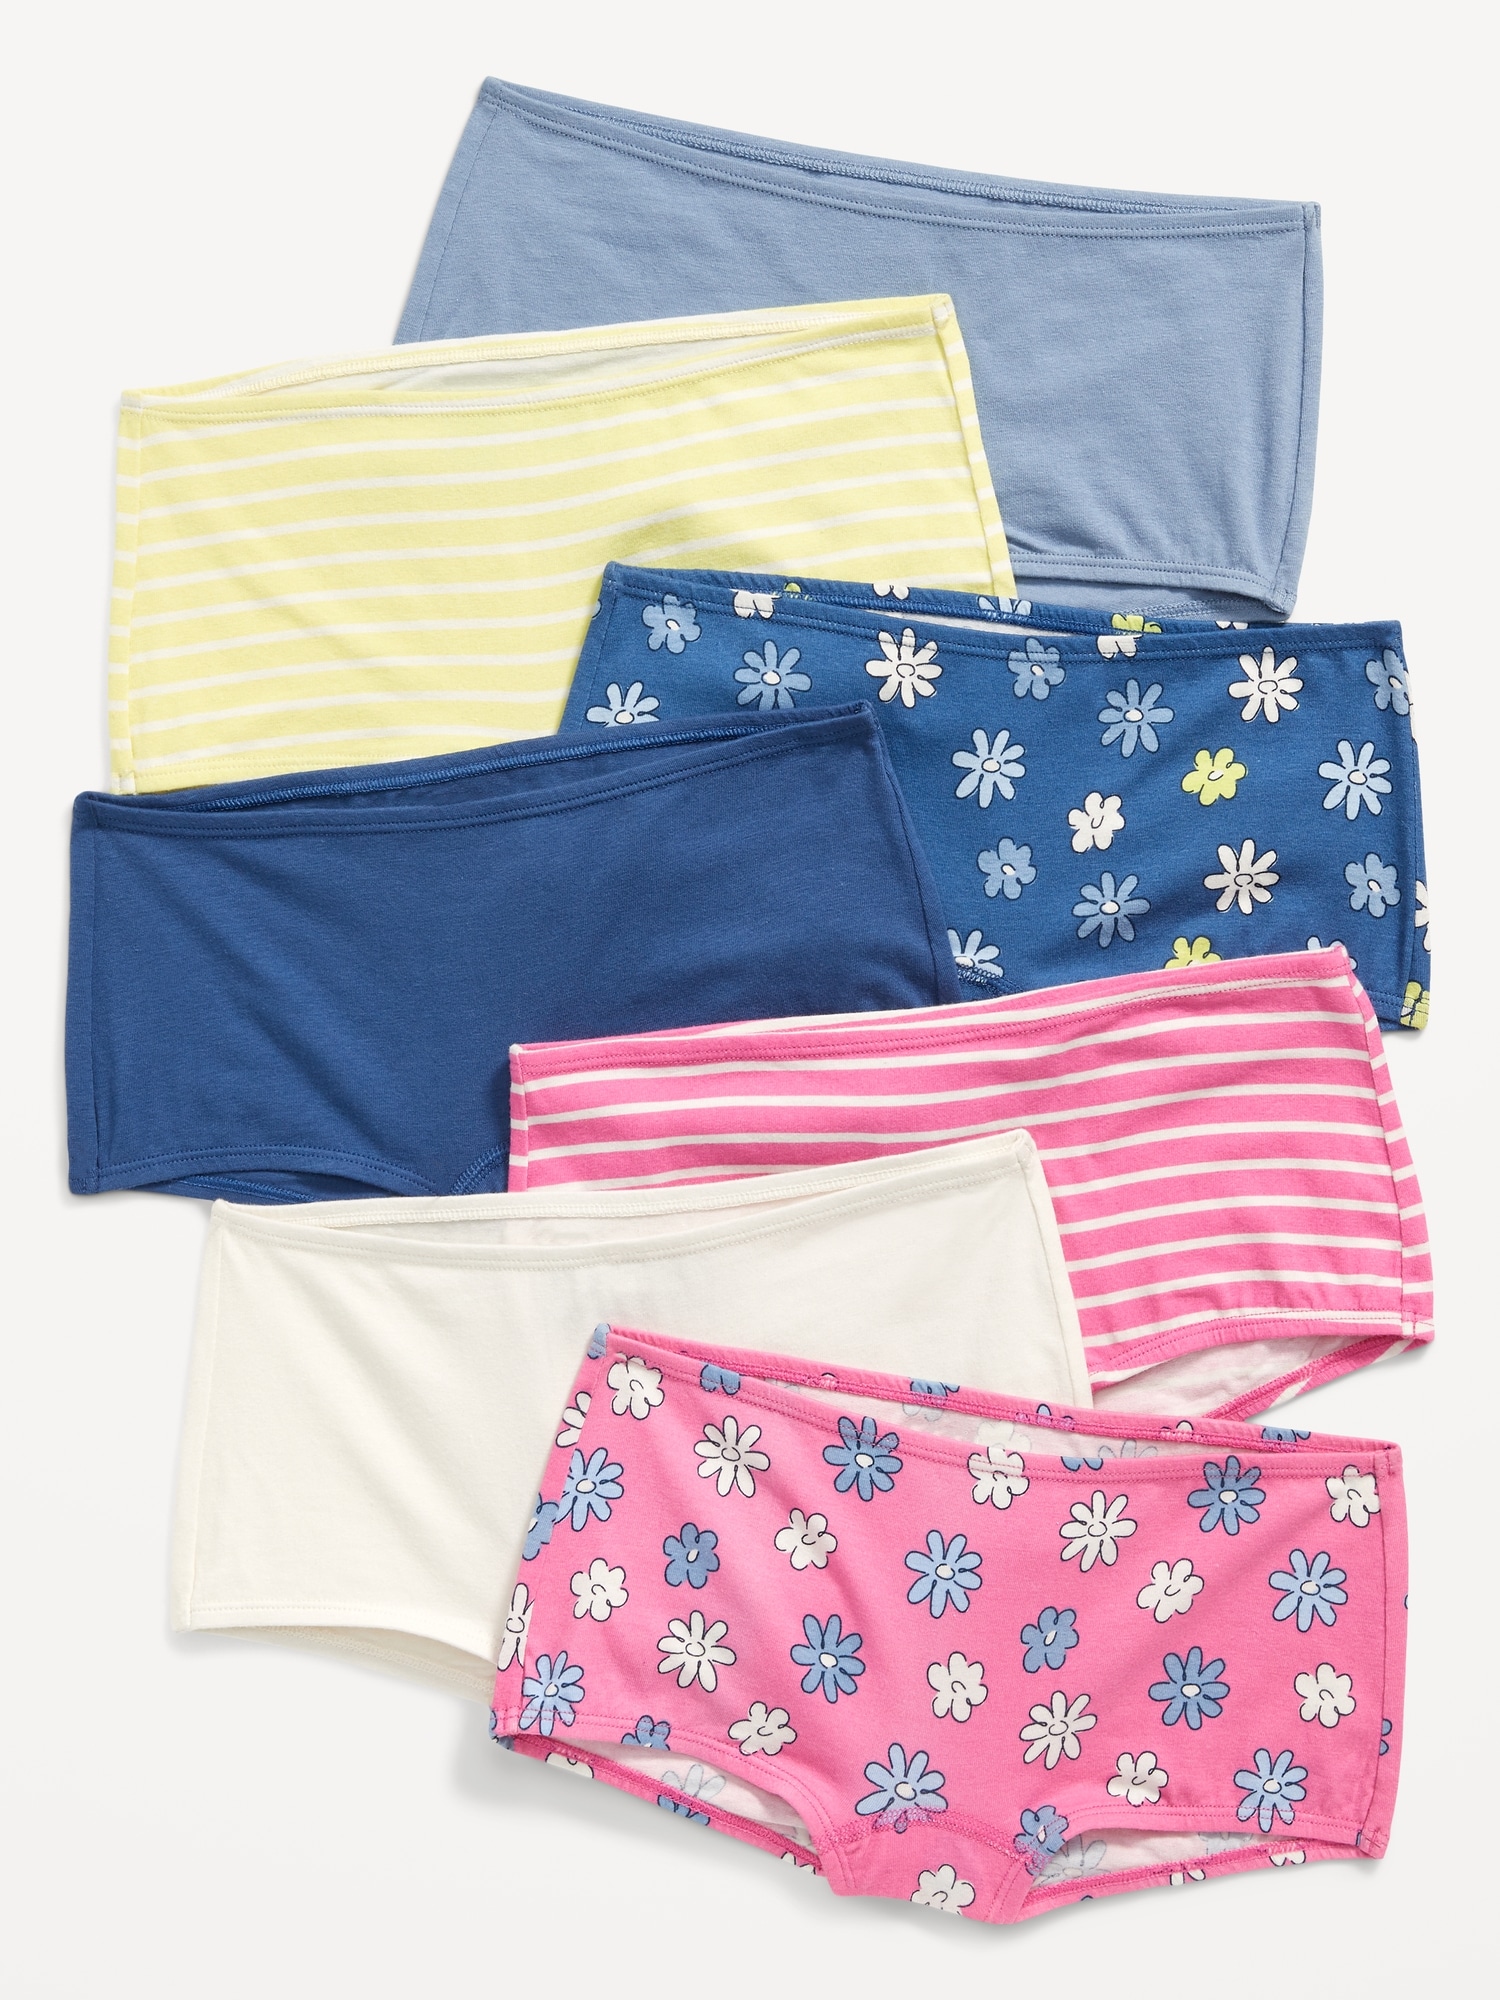 Girls Underwear Shopping